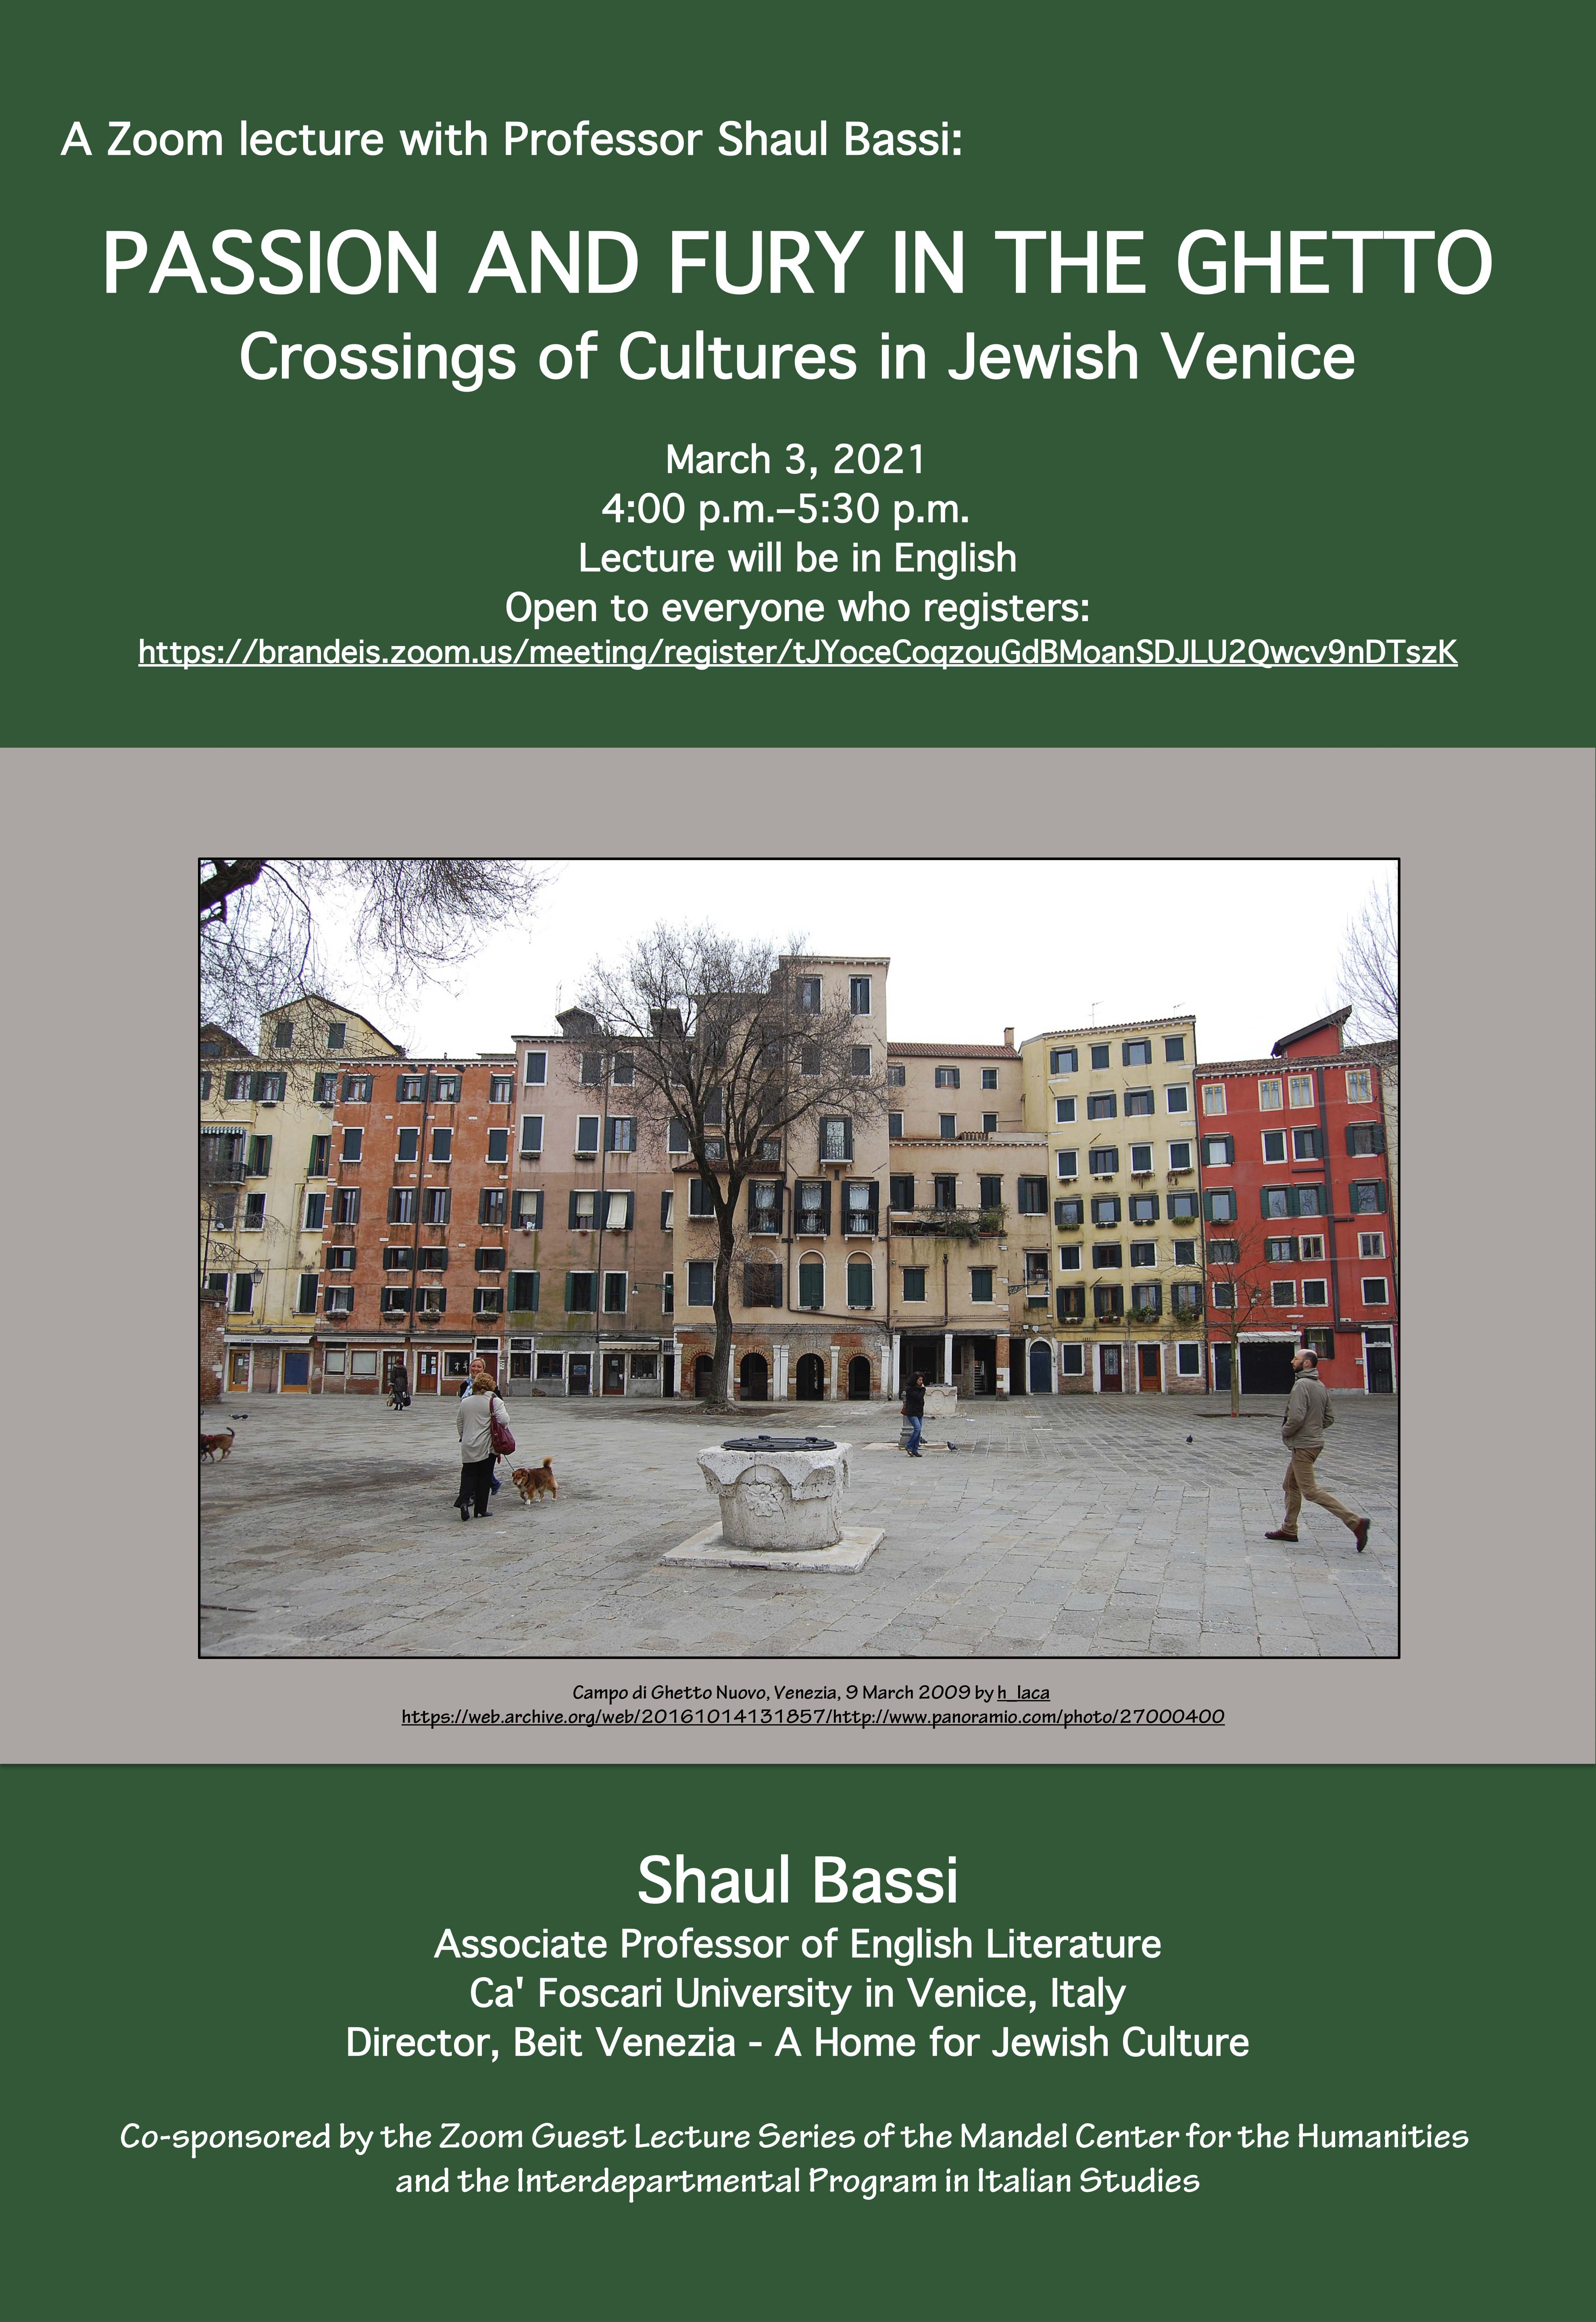 Poster for event: description as on webpage plus photo of Campo di Ghetto Nuovo, Venezia, 9 March 2009 by h_laca. 